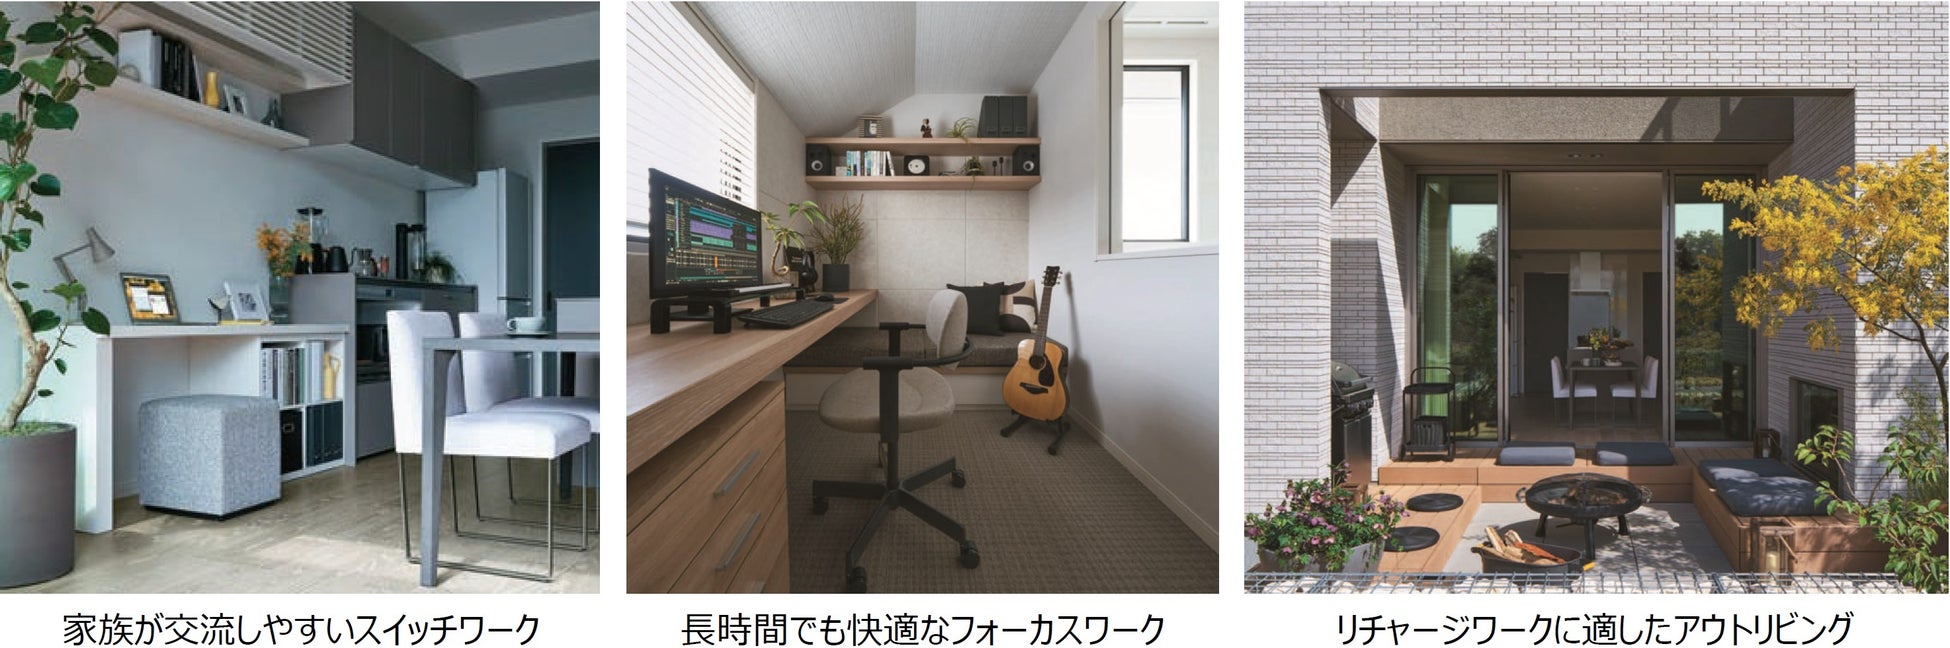 プロの「おすすめ」を満載した、新時代の企画住宅「SMART STYLE Roomie」を新発売のサブ画像6